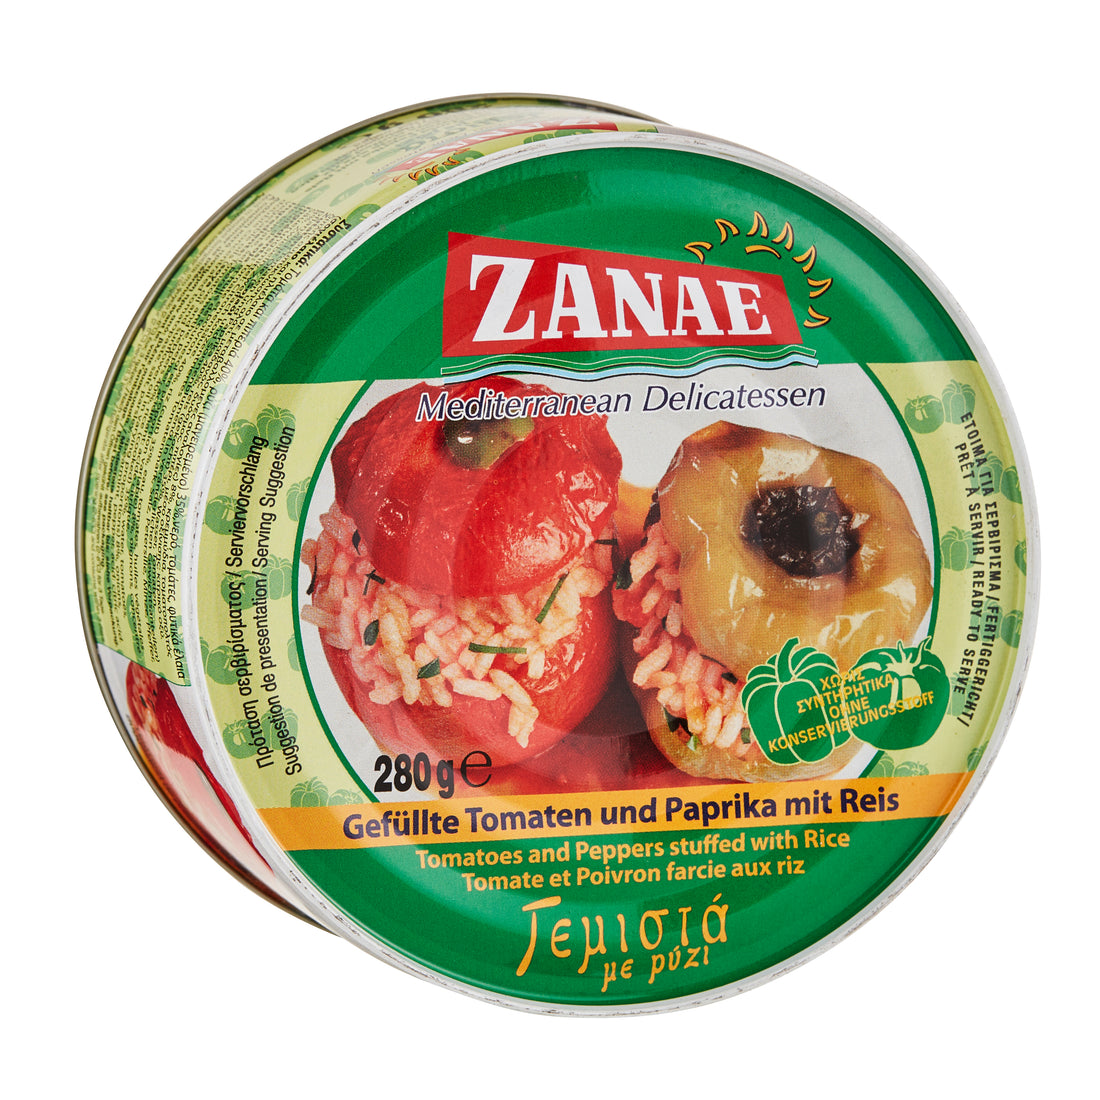 Gefüllte Tomaten und Paprika mit Reis Zanae 280 g